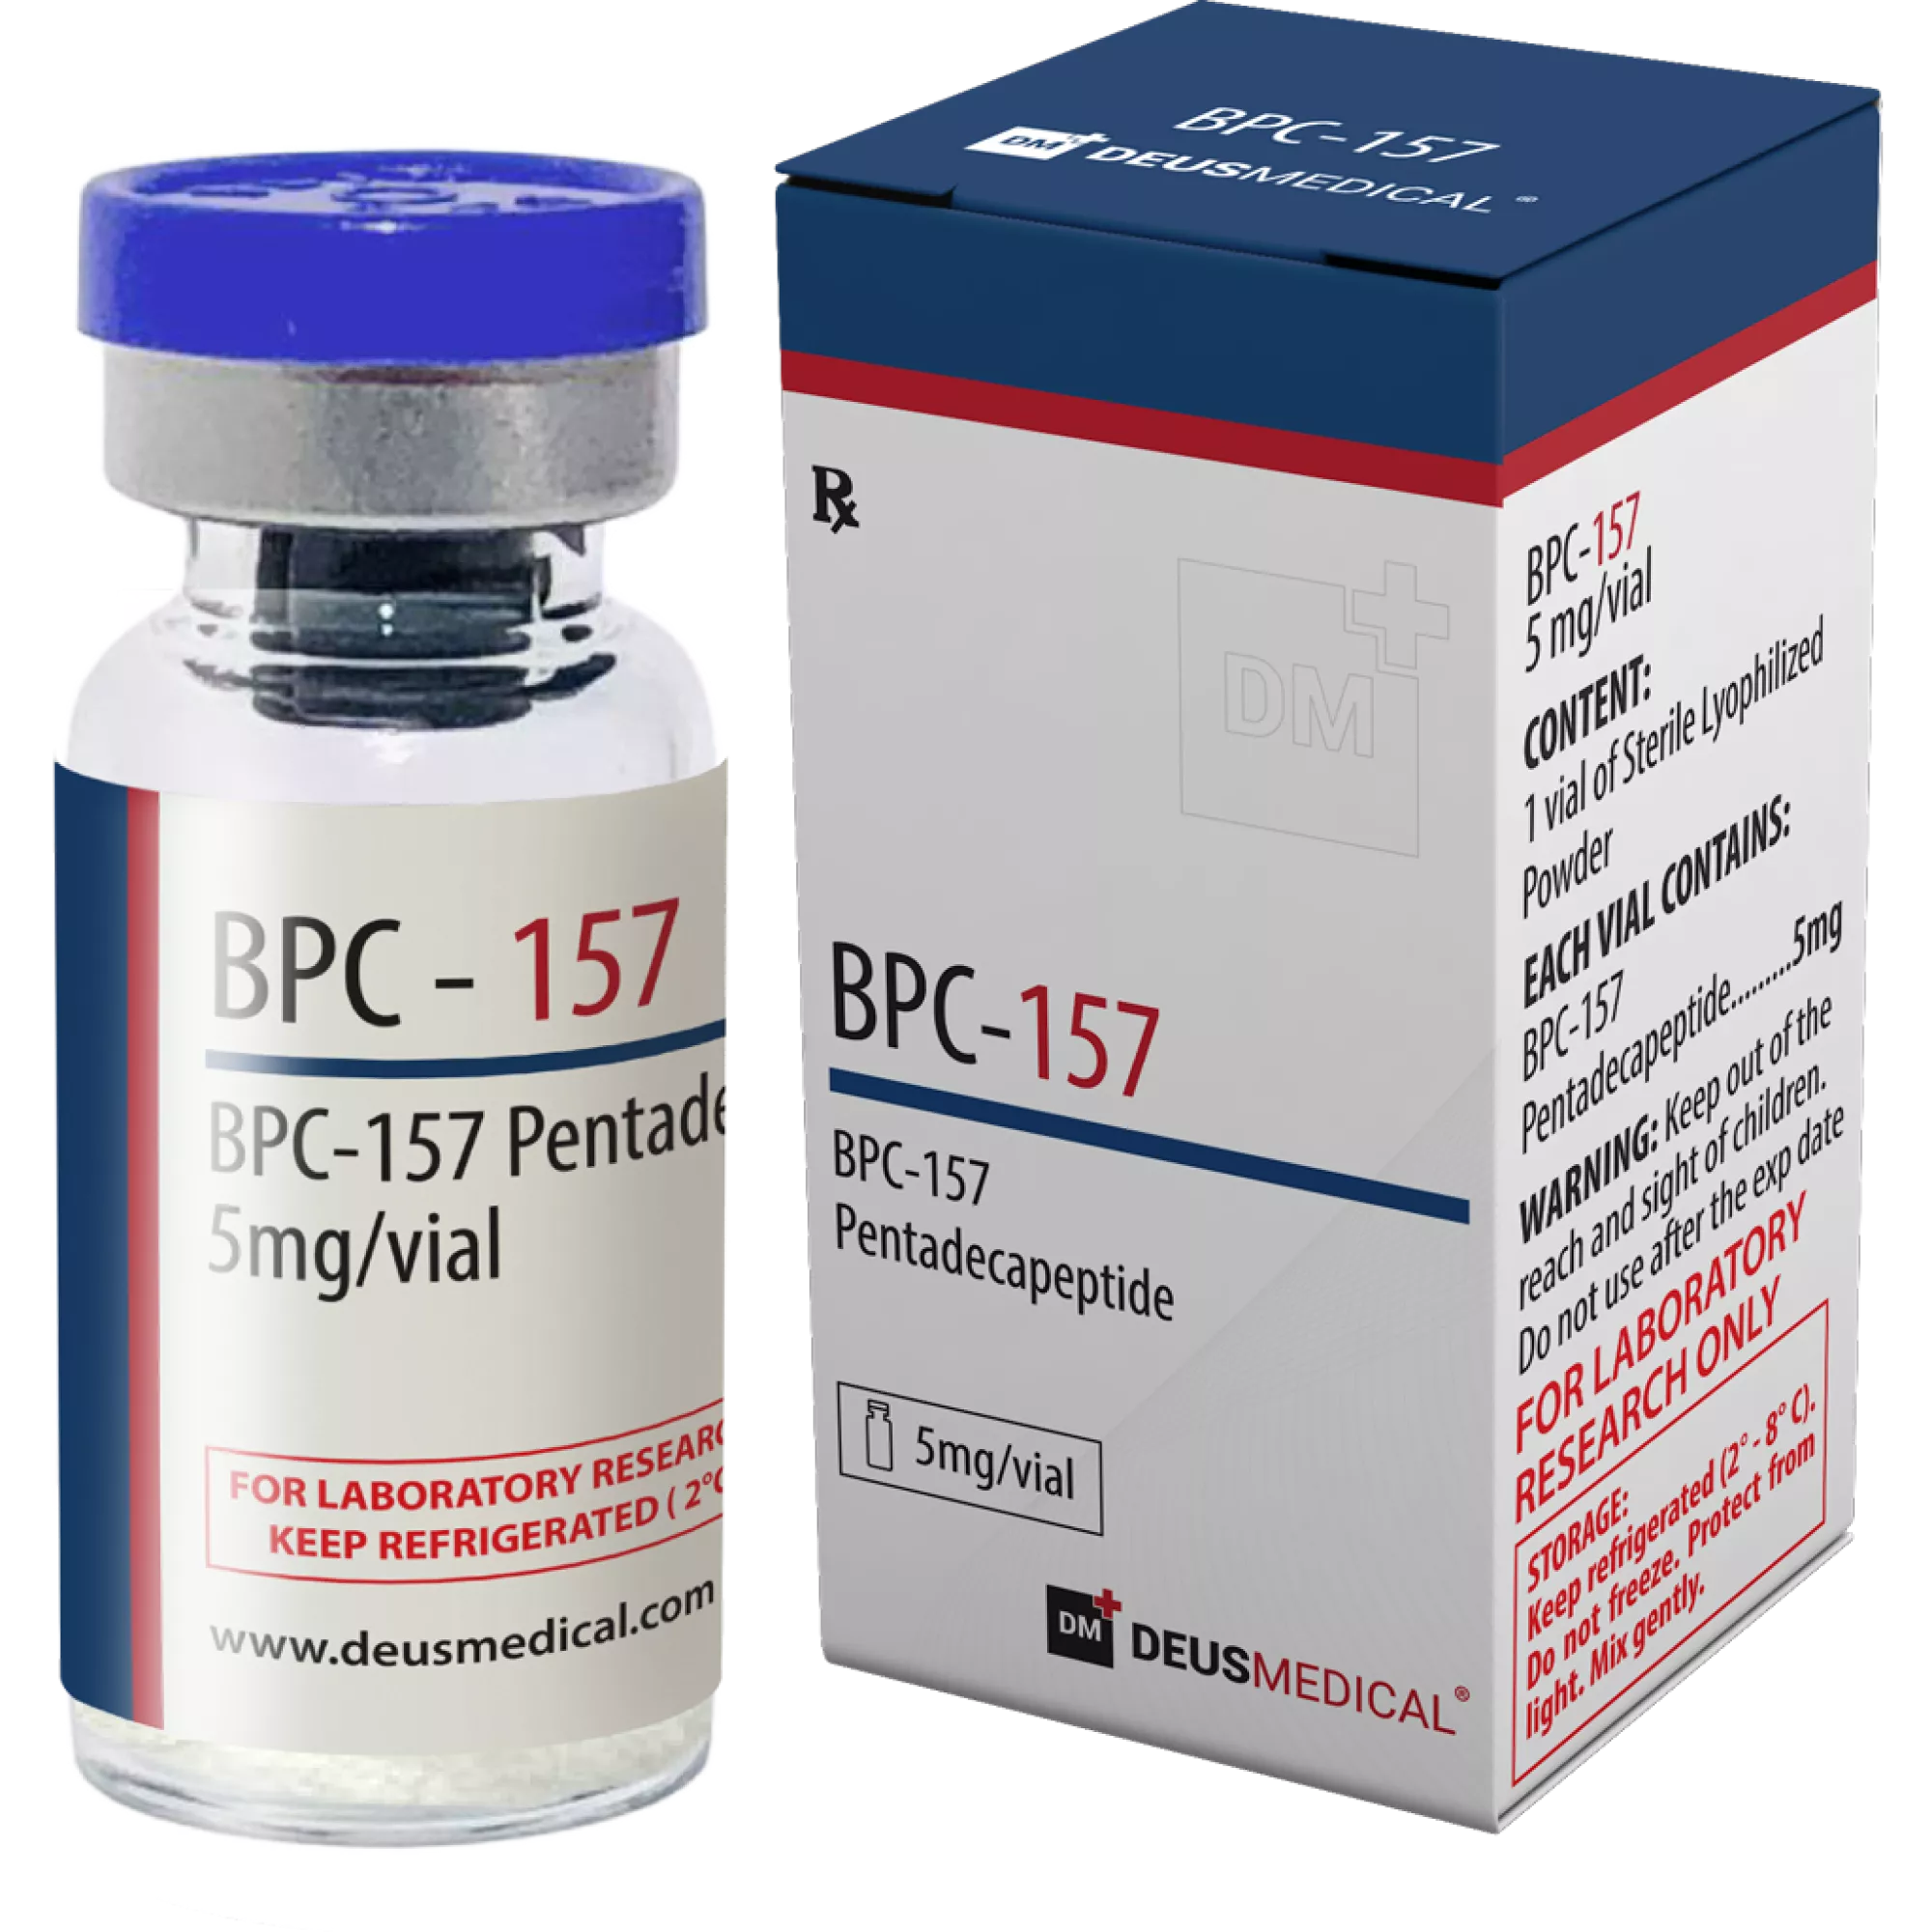 BPC-157 (BPC-157 Pentadecapeptid), Deus Medical, Kaufen Sie Steroide Online - www.deuspower.shop